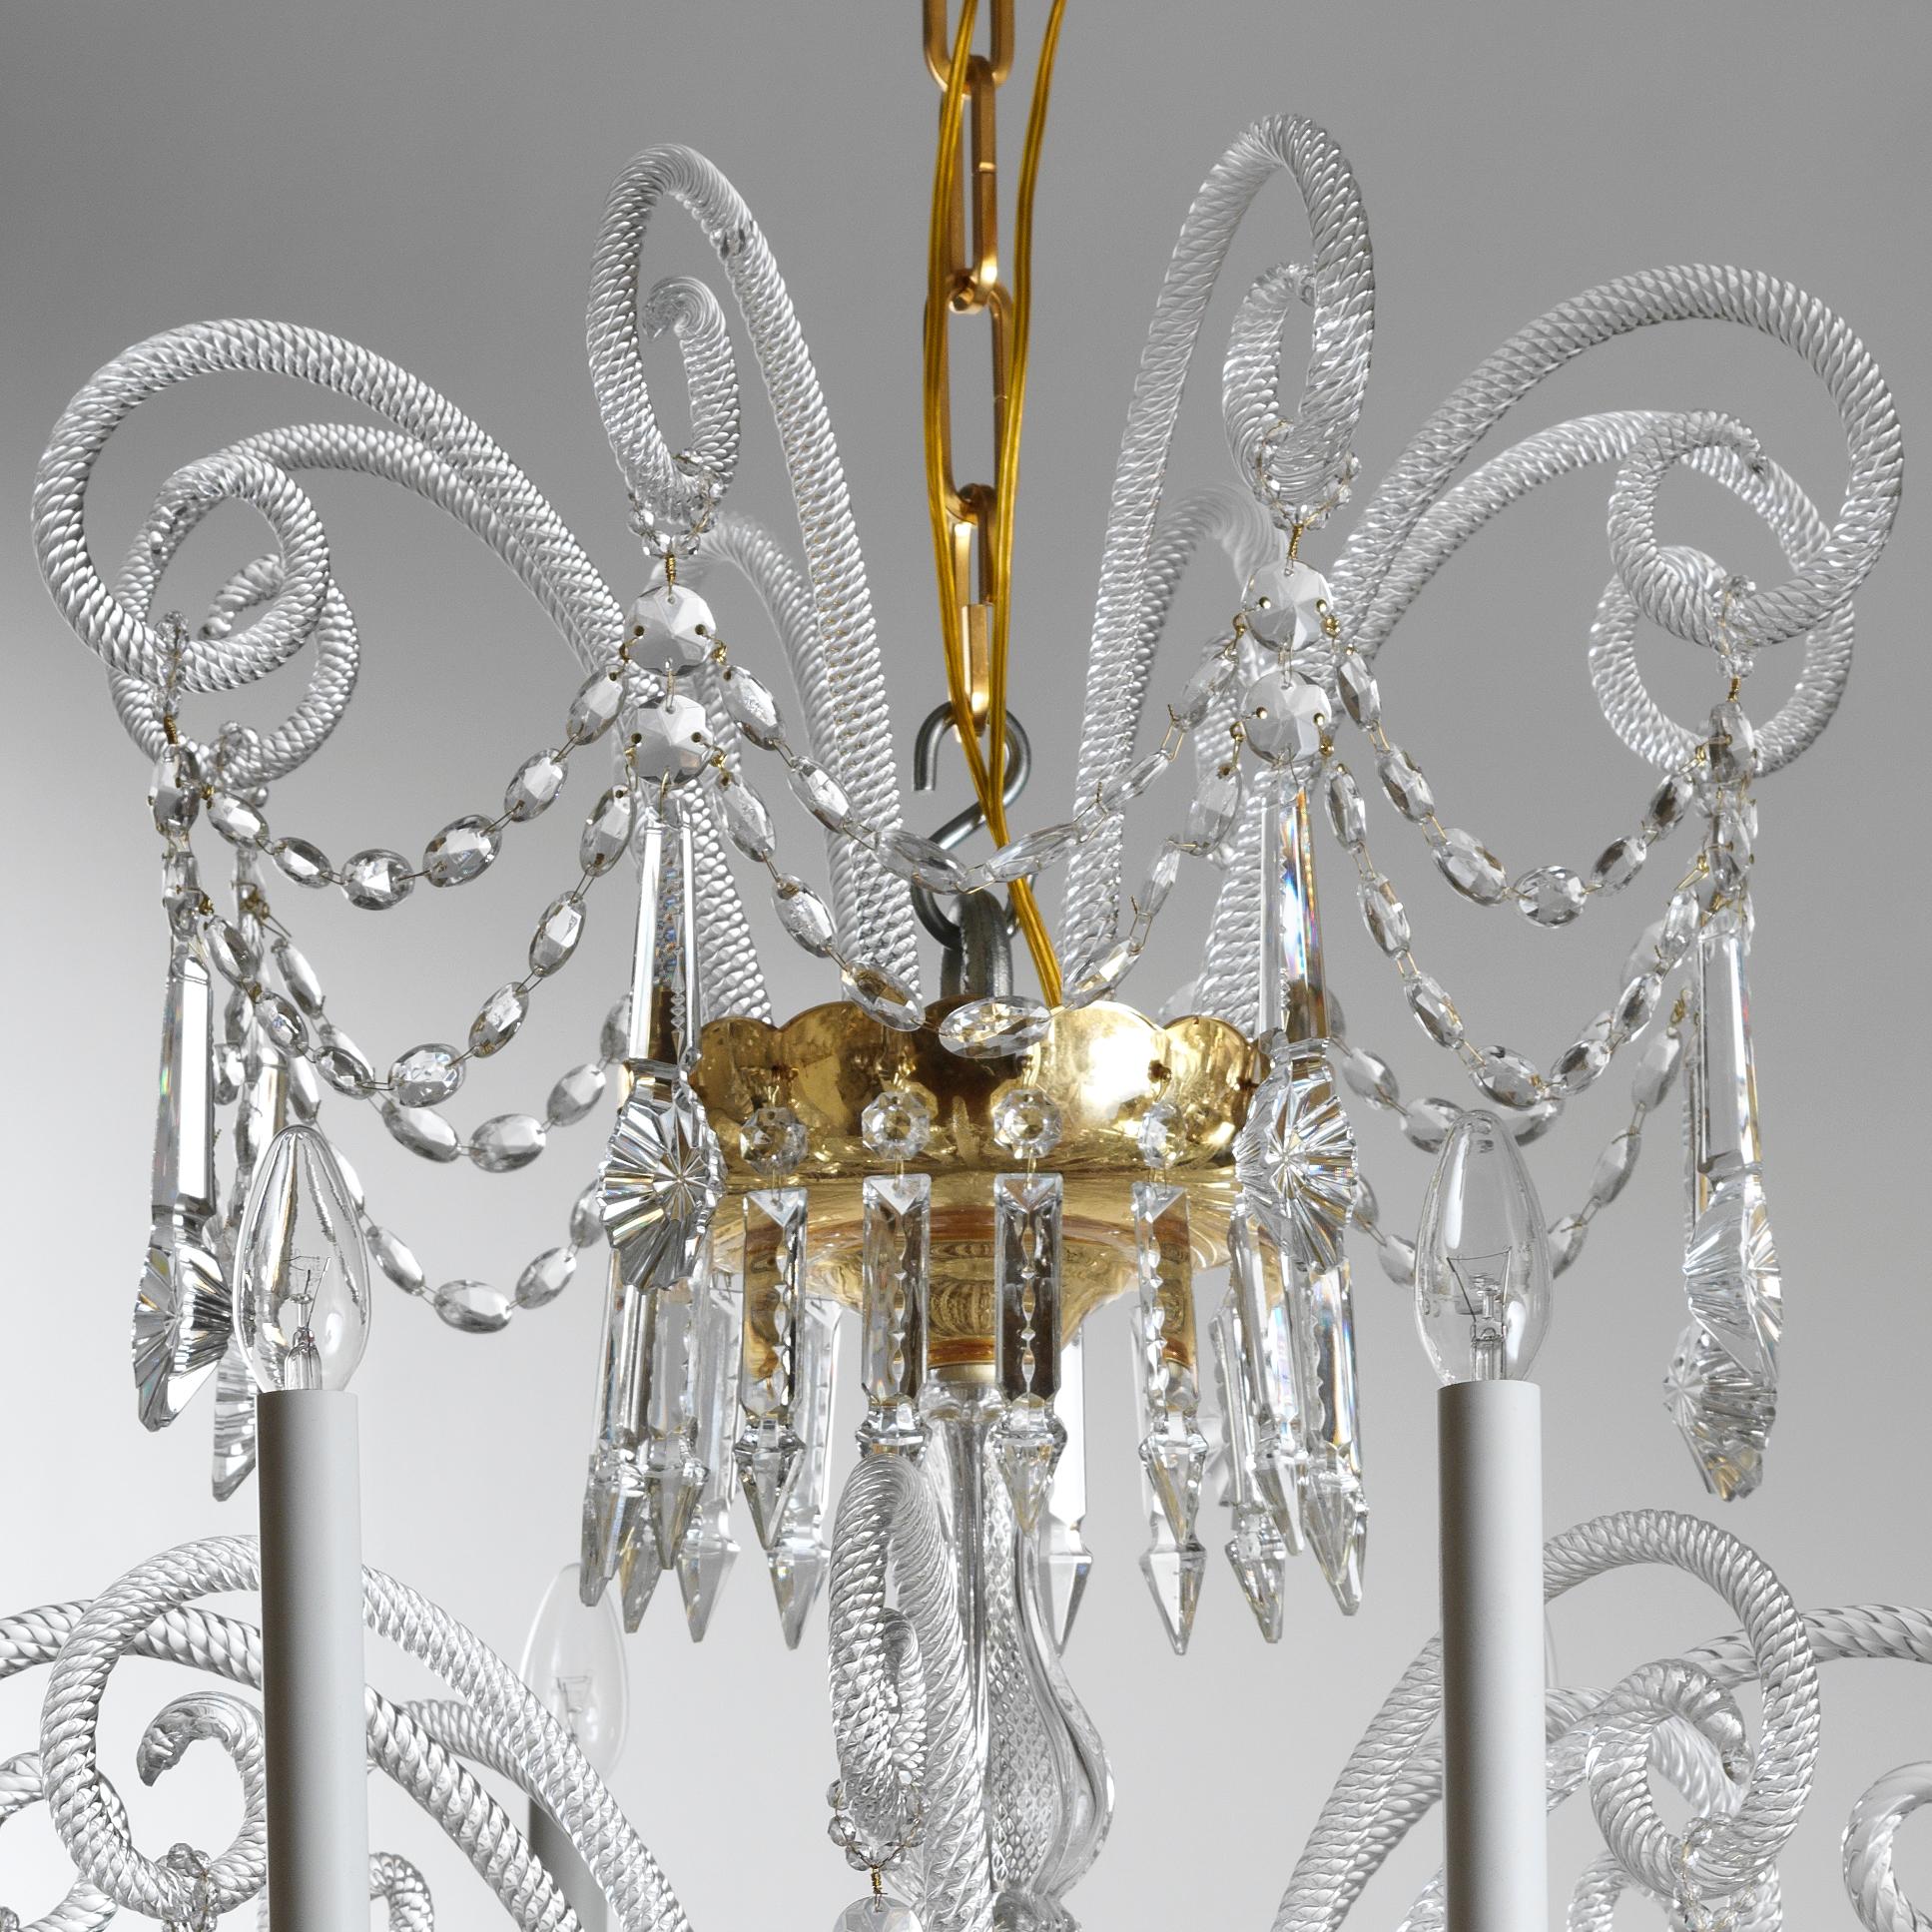 Ce lustre de style XVIIIe siècle en cristal et verre soufflé de Gherardo Degli Albizzi est réalisé en couleur transparente avec des coupes dorées. Ce lustre est composé de trois couches de branches. Des pastorales de la couronne supérieure